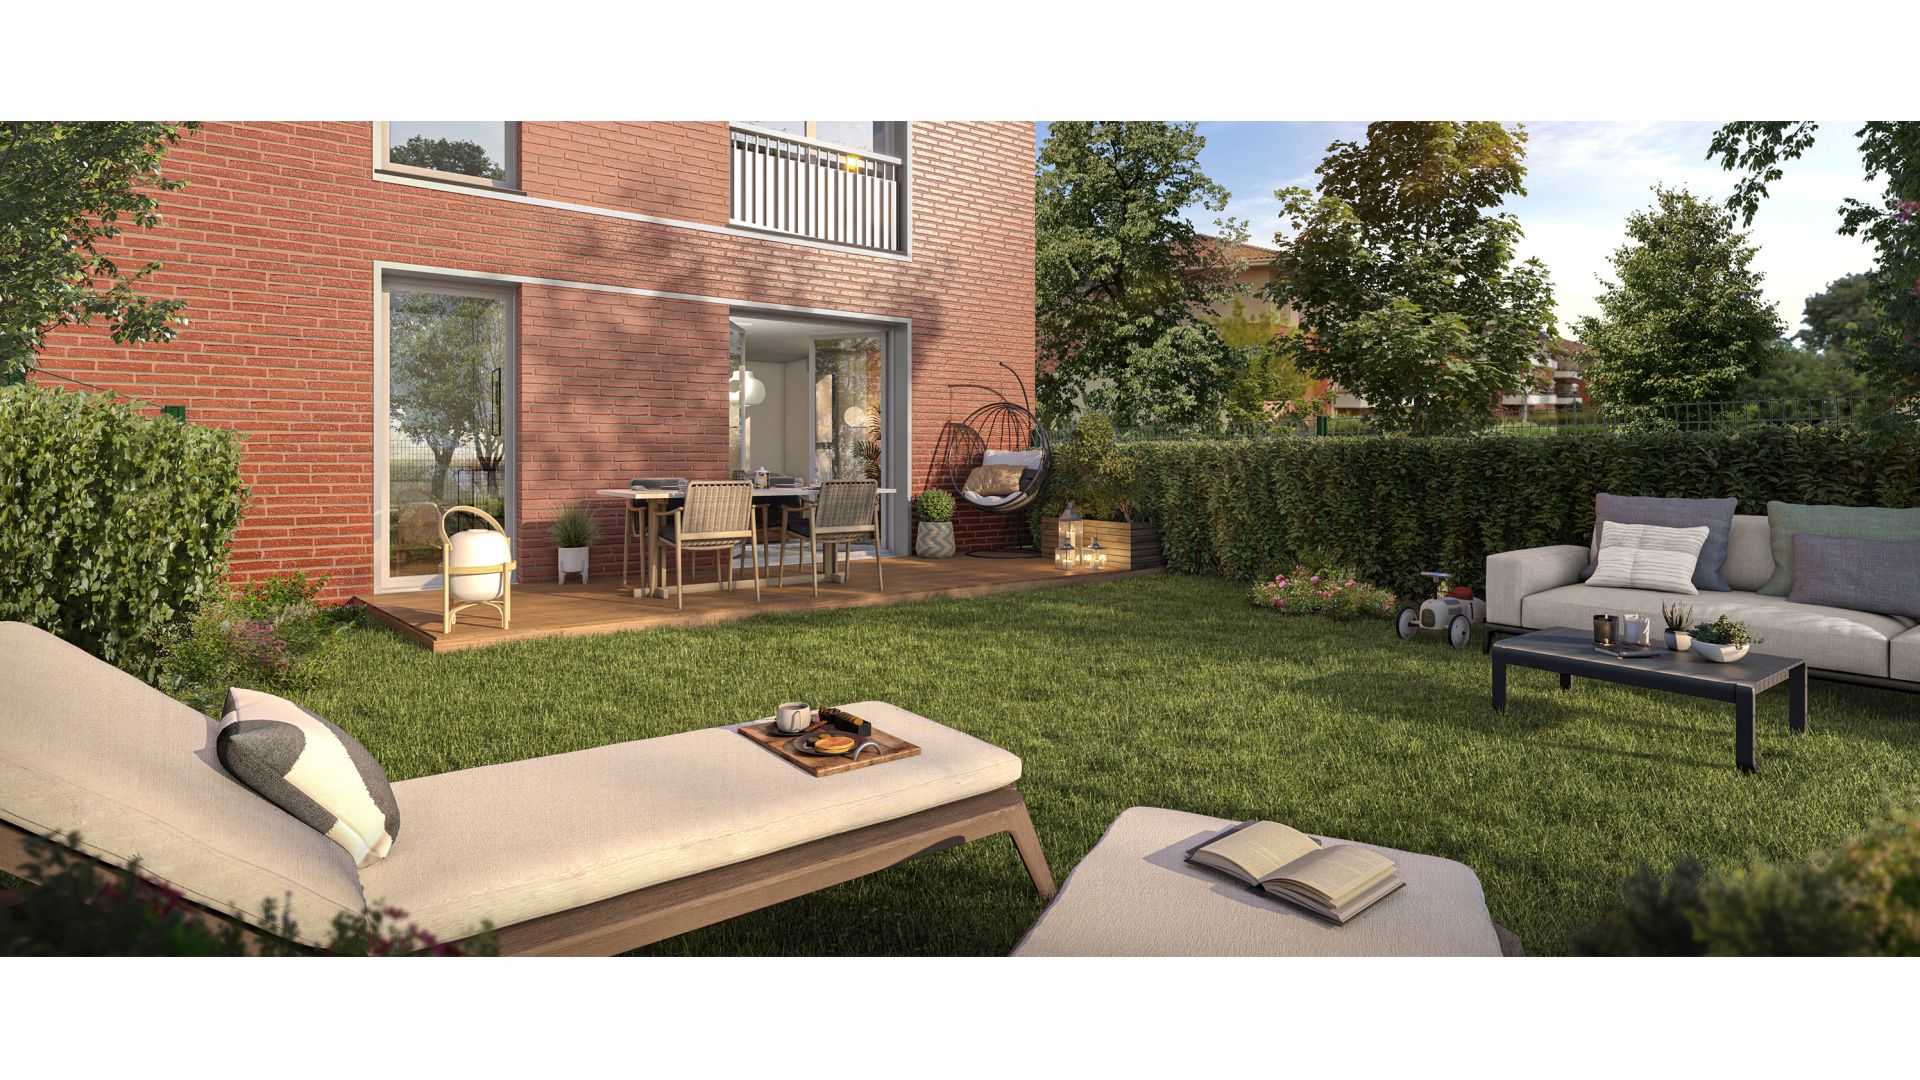 Greencity immobilier - achat appartements neufs du T2 au T5 - Résidence Villa Harmonie - 31200 Toulouse - vue terrasse